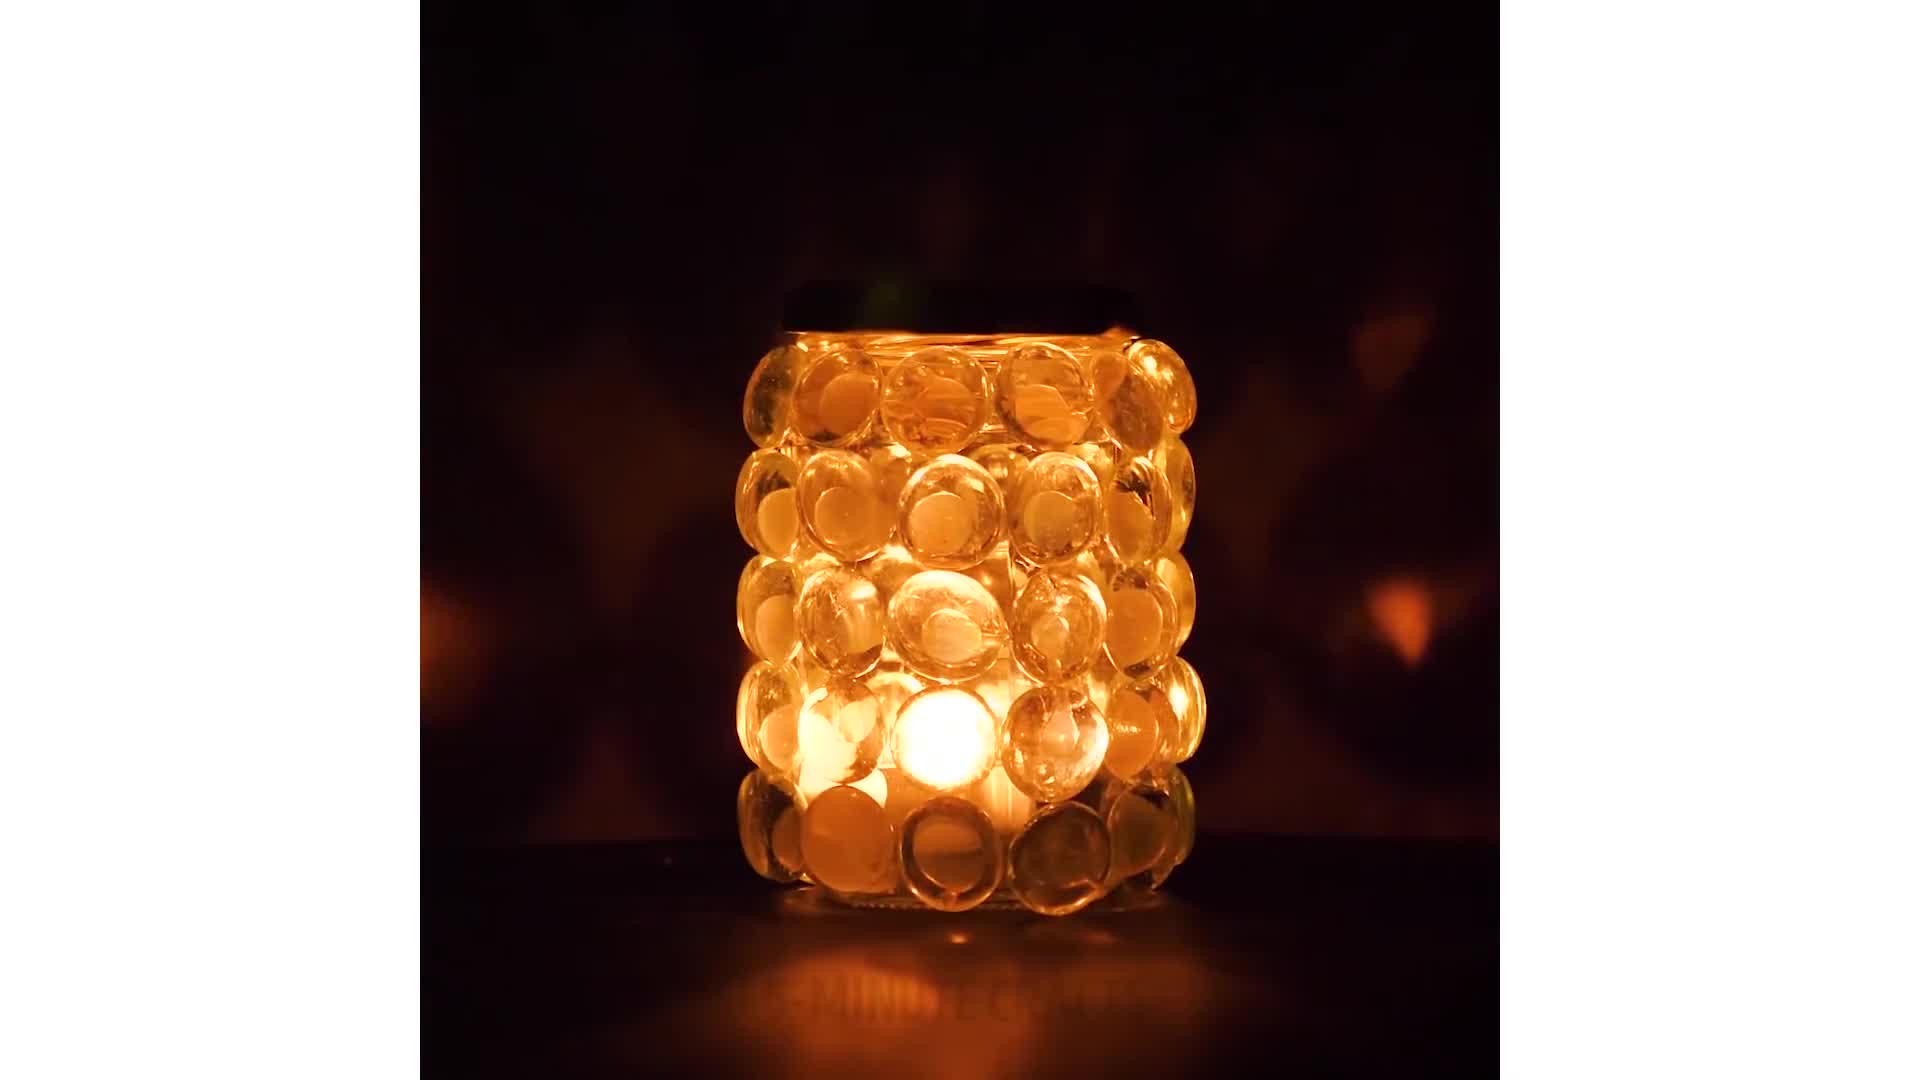 21 замечательный светильник – делаем своими руками яркие аксессуары из того, что под руками